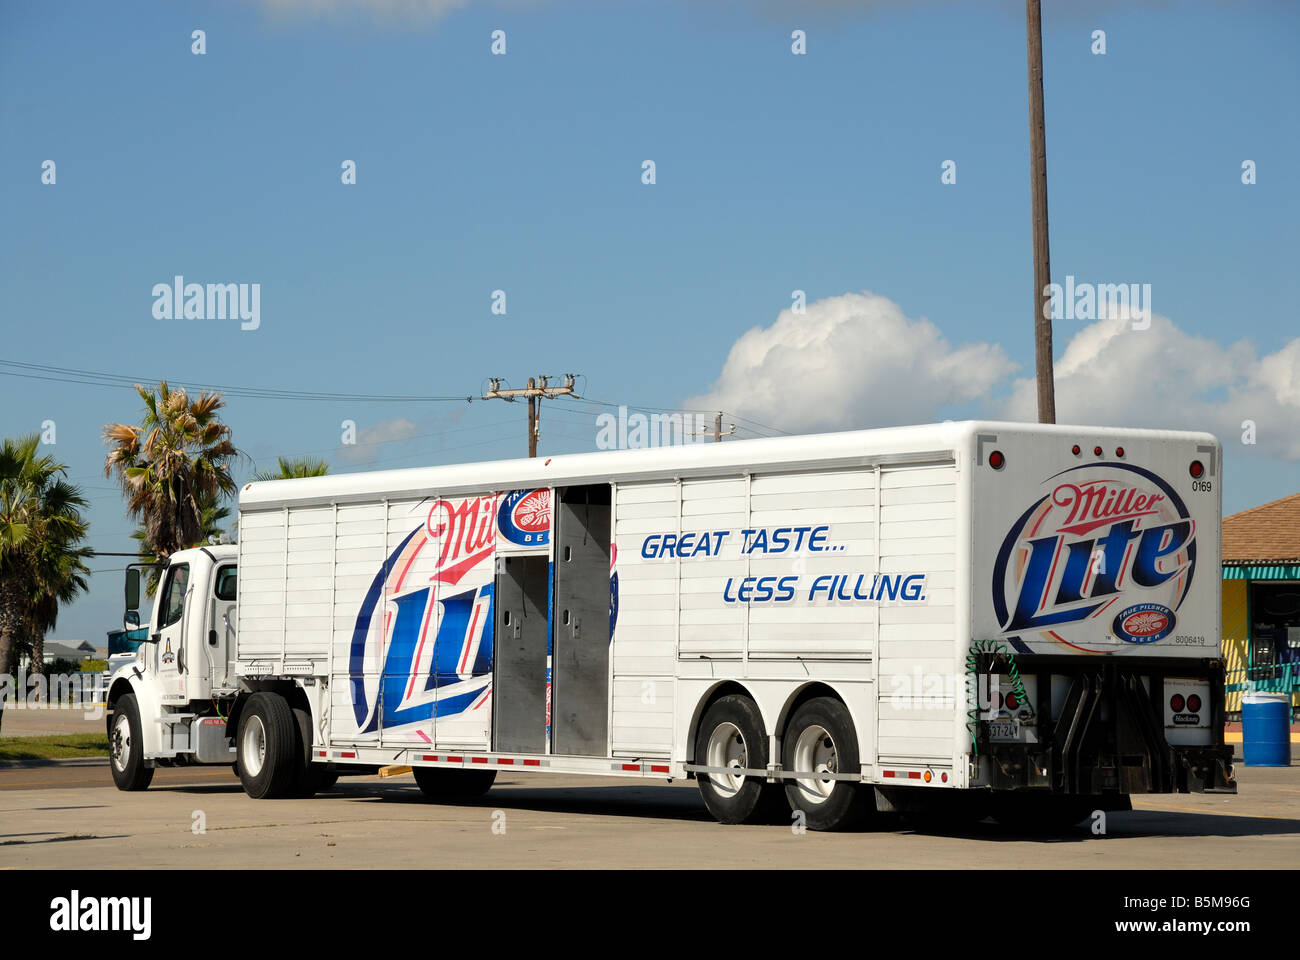 Miller Lite chariot dans le sud du Texas USA Banque D'Images